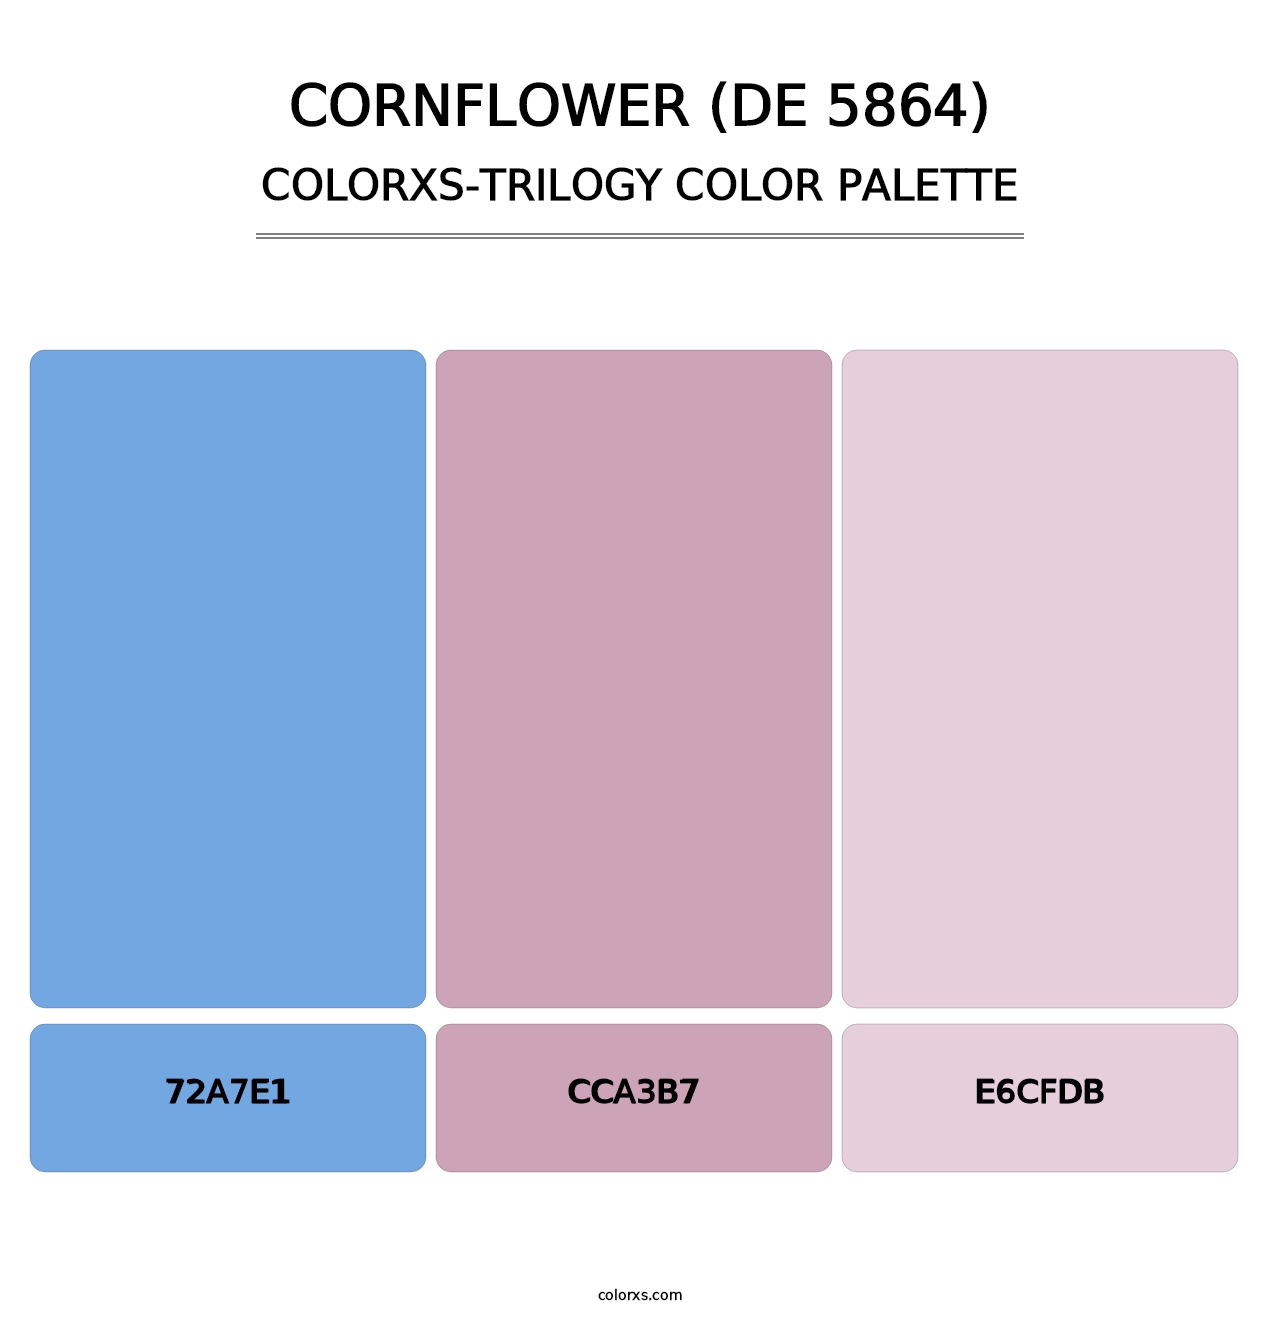 Cornflower (DE 5864) - Colorxs Trilogy Palette